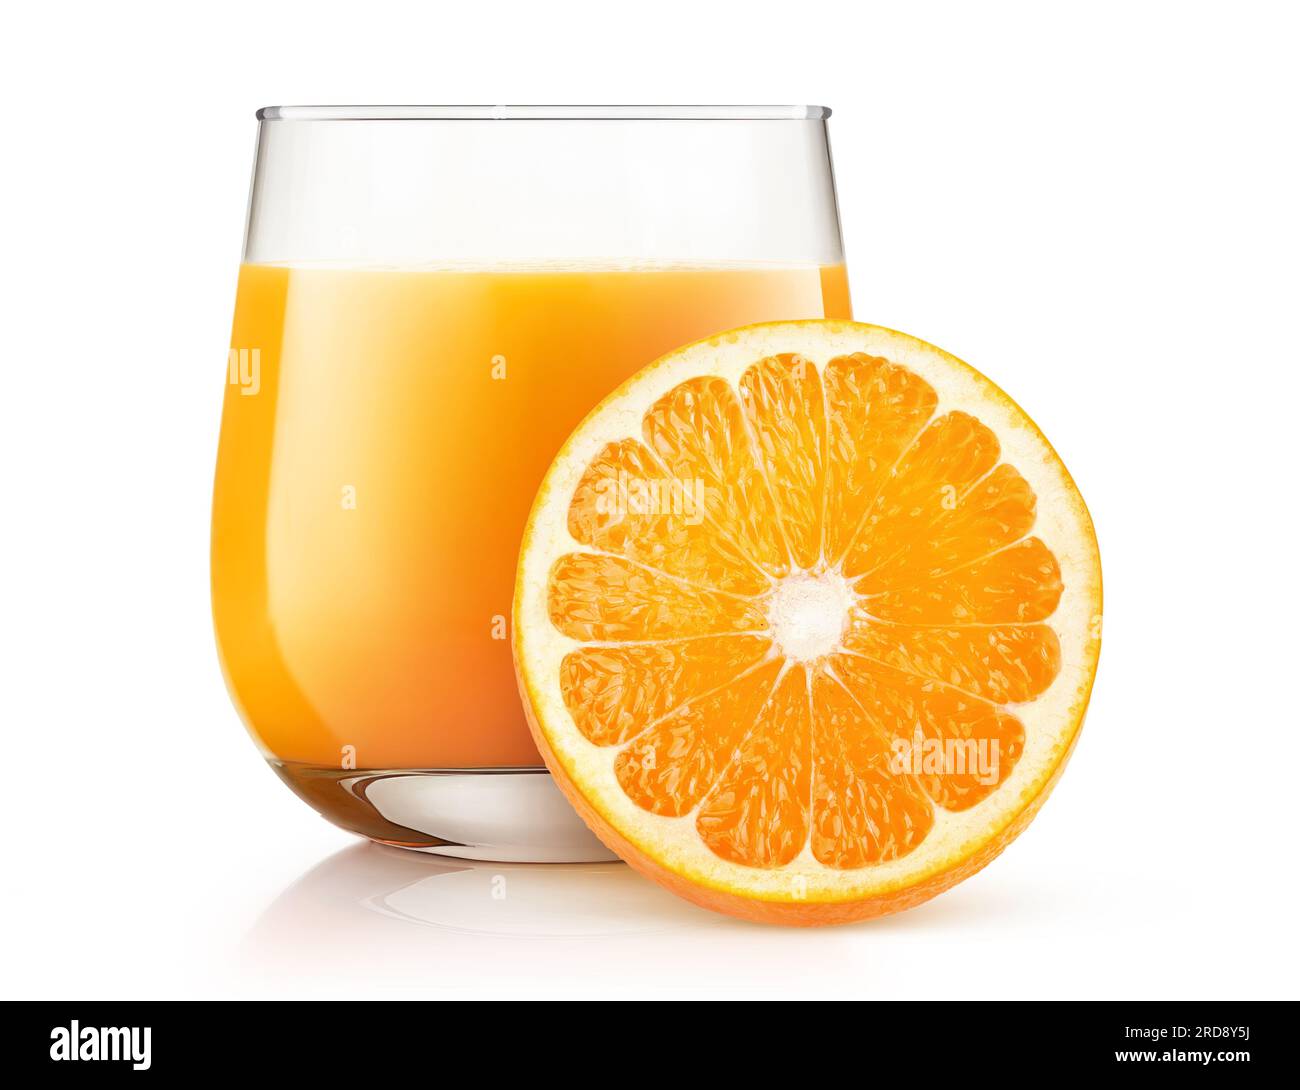 Jus d'orange dans un verre et tranche de fruit orange, isolé sur fond blanc Banque D'Images